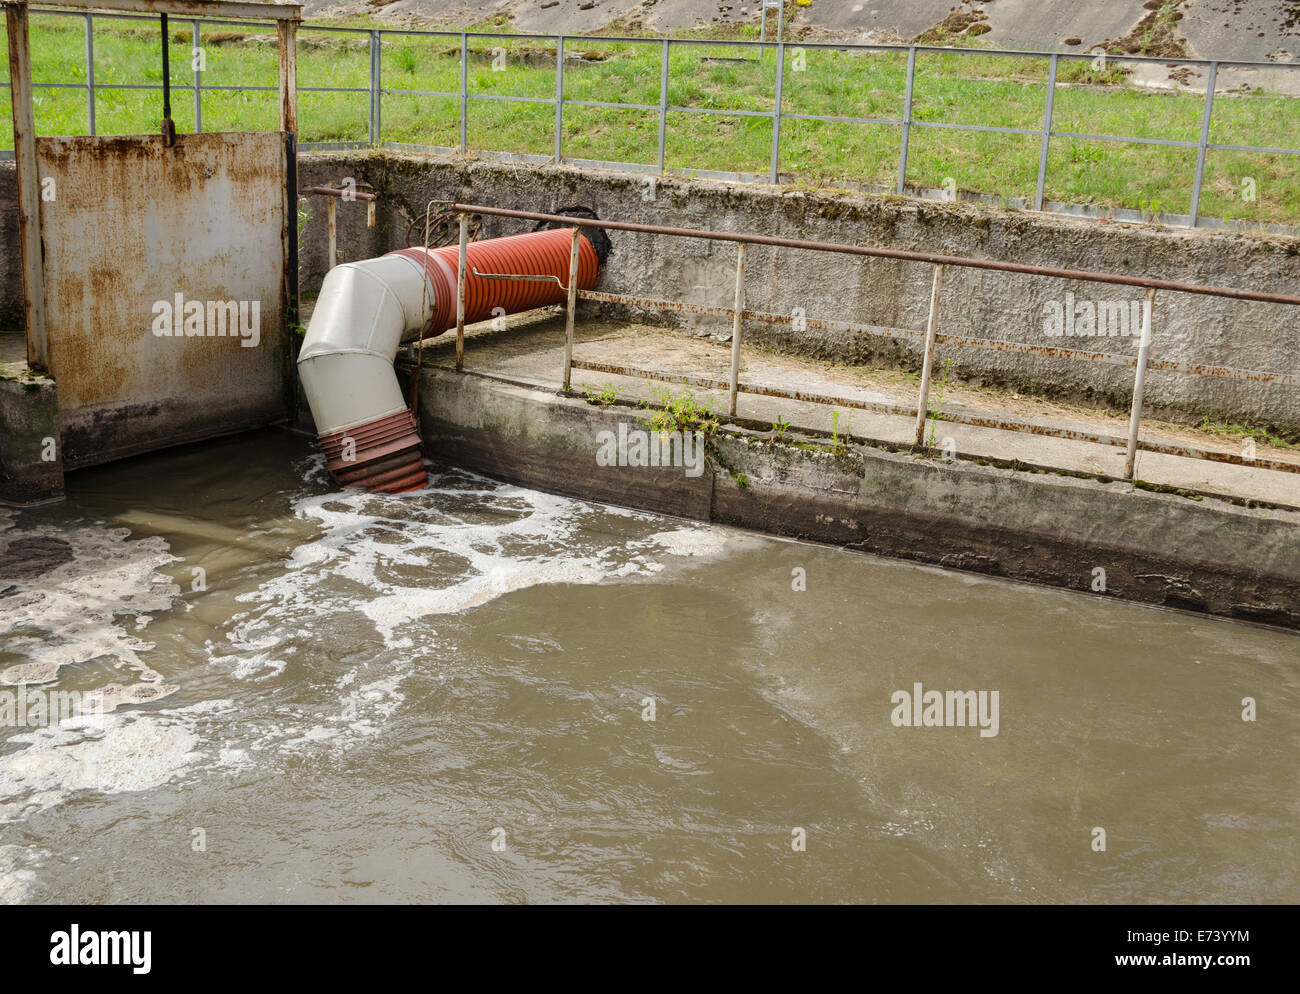 Alle Abwässer der Stadt Abwasser und Müll fließen durch Rohr Schlauch in Richtung Wasser Reinigung Behandlungsstufen. Stockfoto